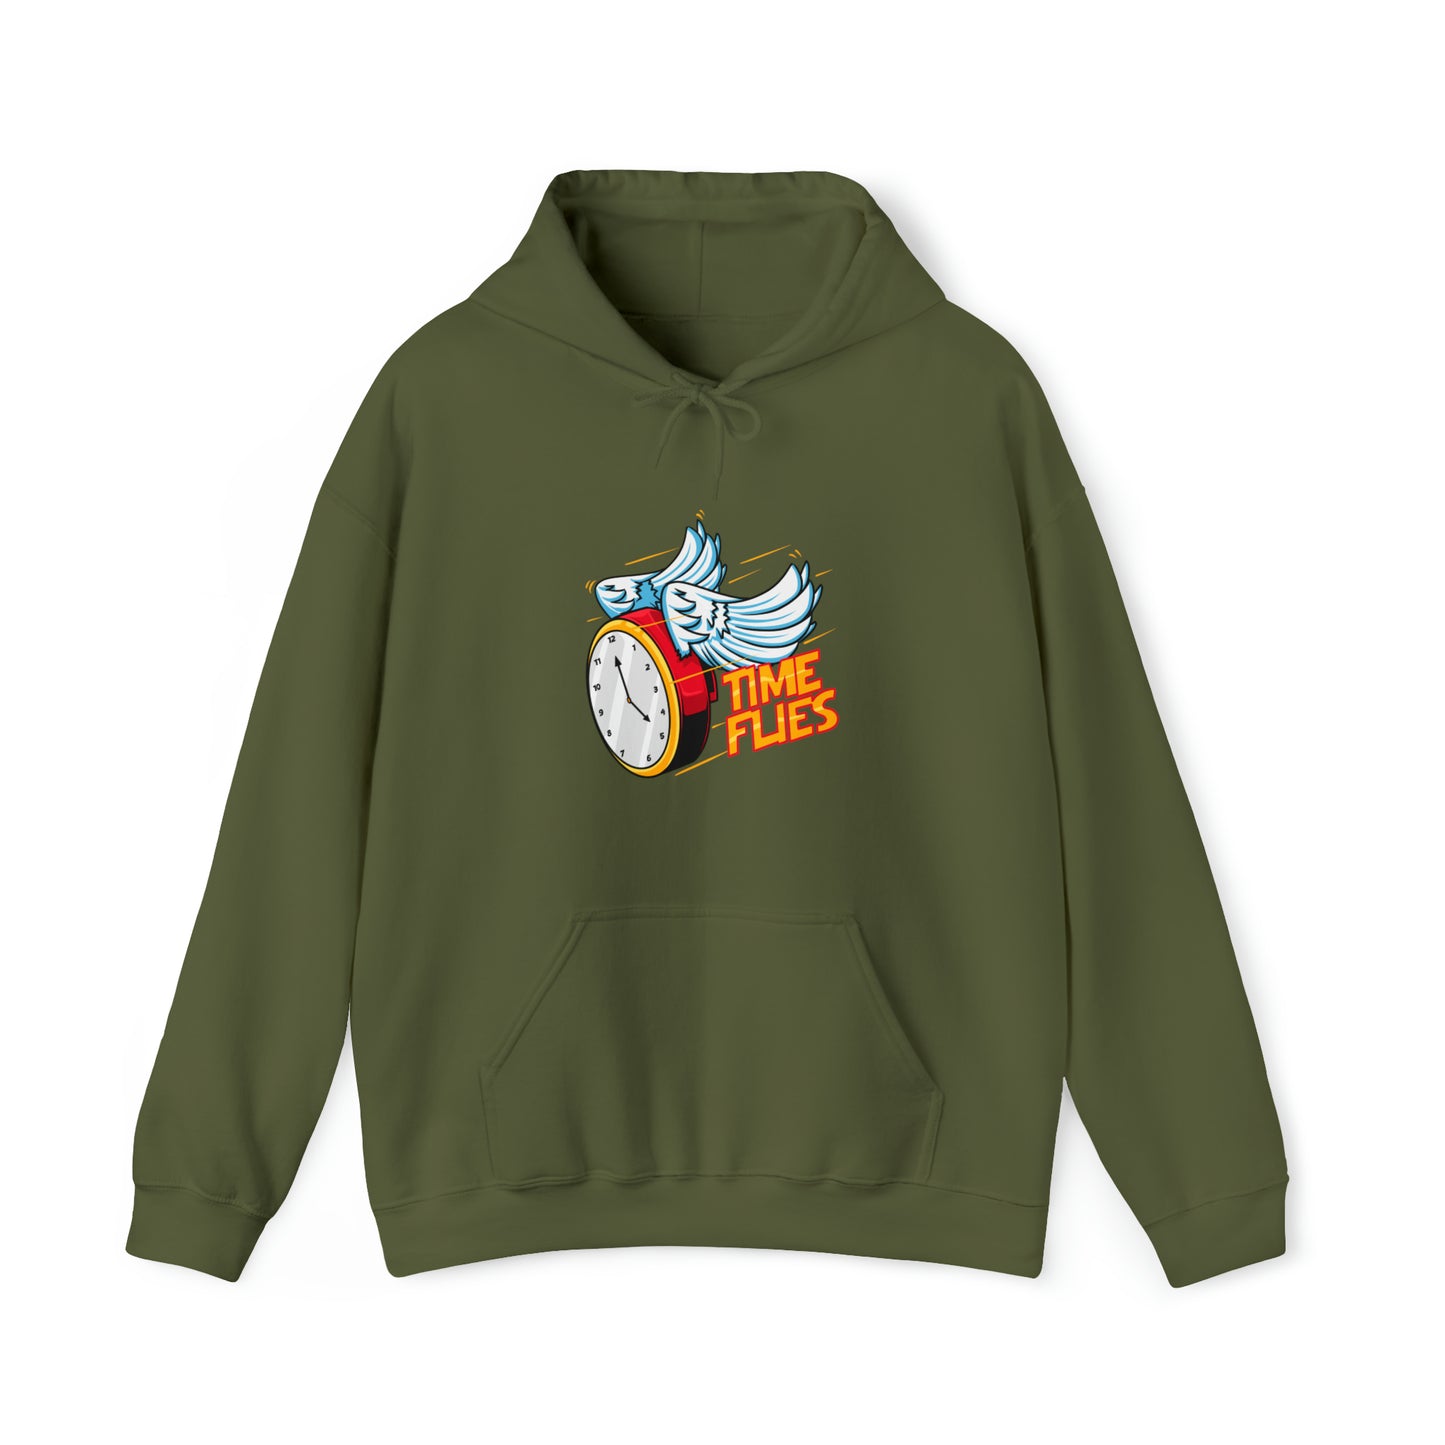 Custom Parody Hooded Sweatshirt, Time Flies design